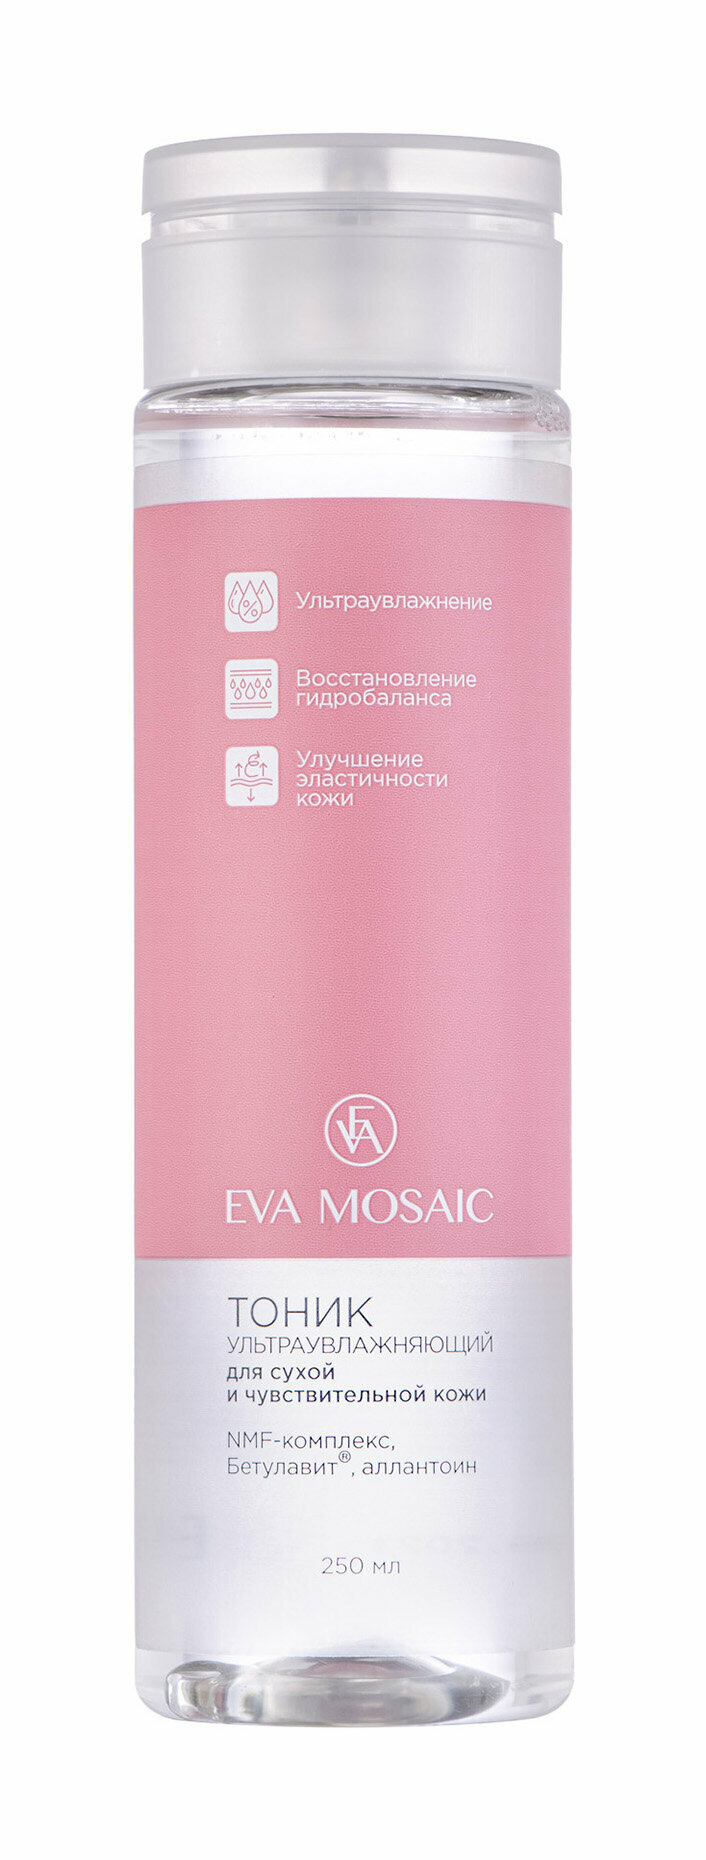 Eva Mosaic Тоник для сухой и чувствительной кожи ультраувлажняющий, 250 мл